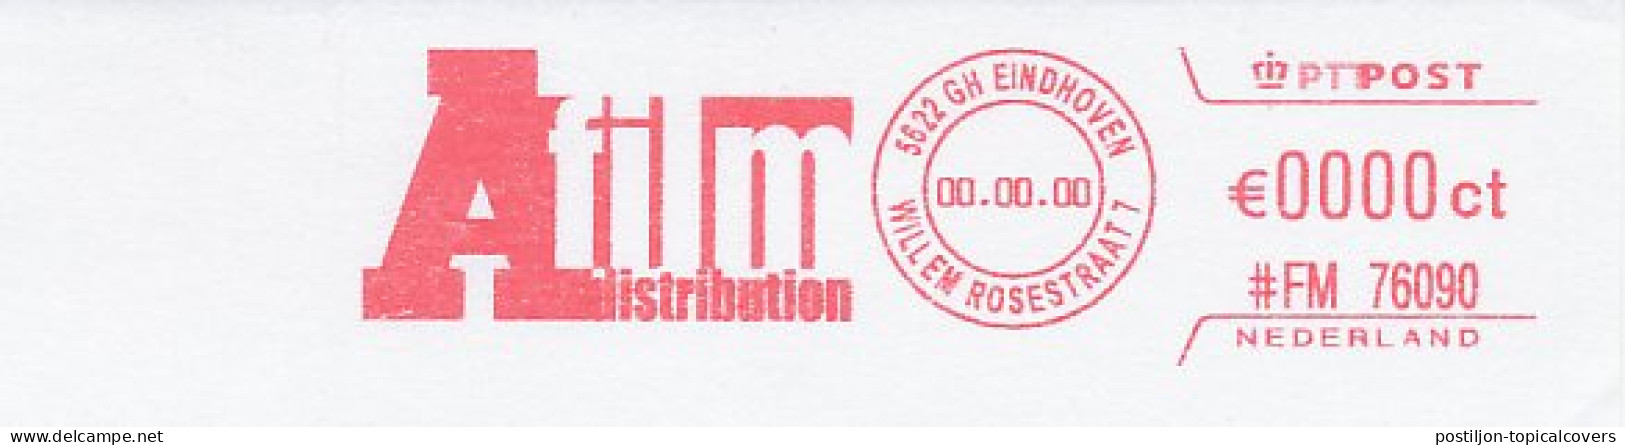 Meter Proof / Test Strip FRAMA Supplier Netherlands A Fiml Distribution - Cinéma